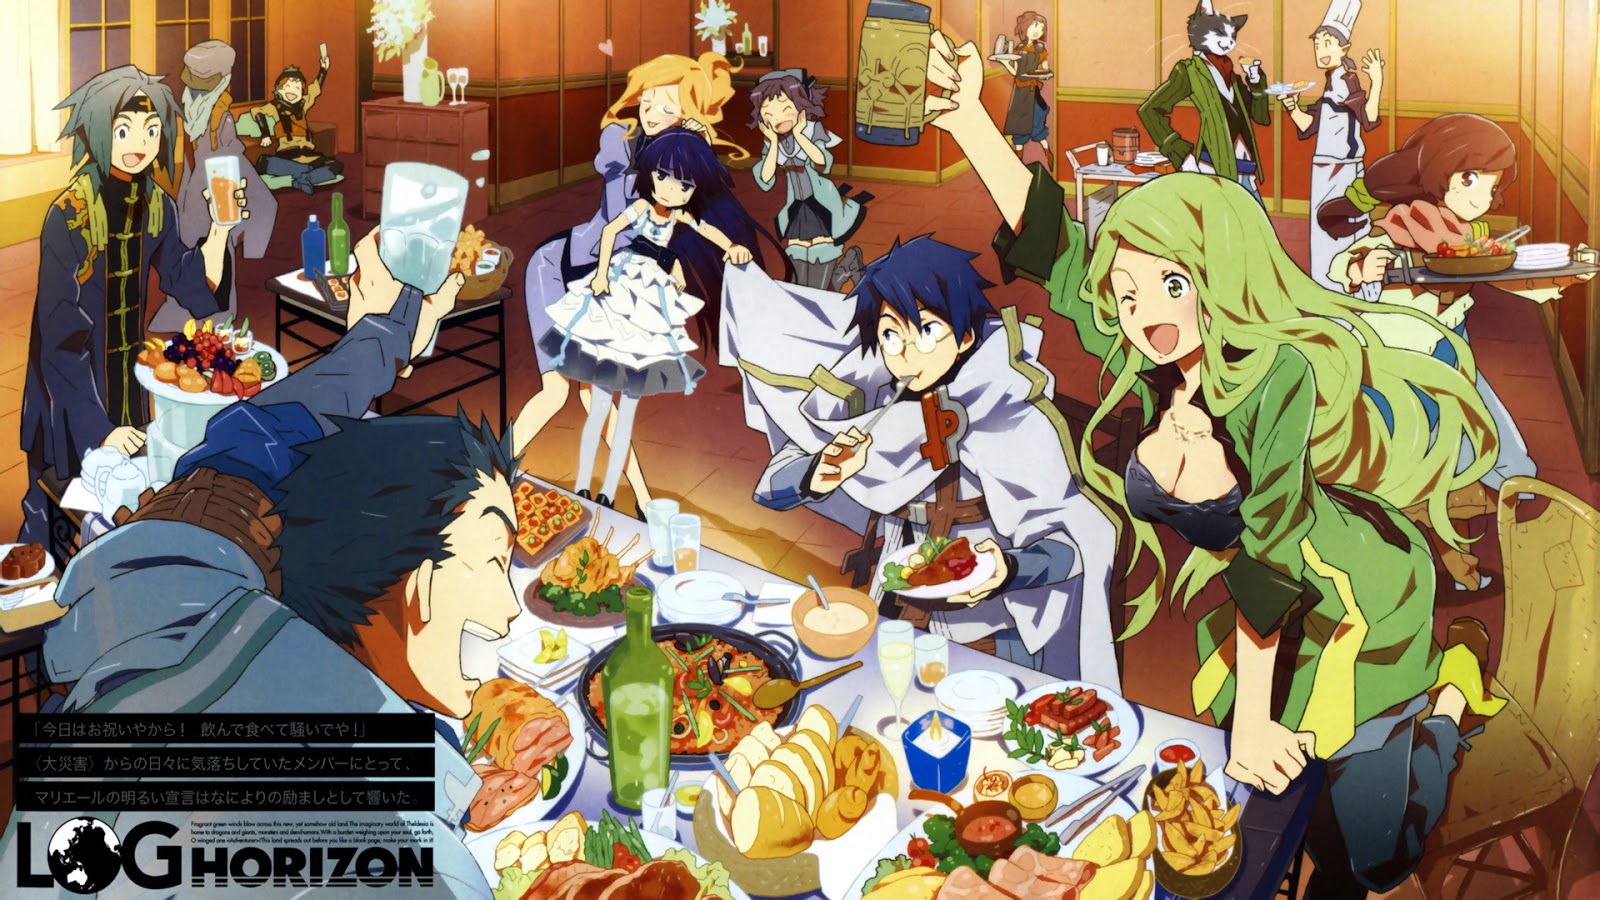 Os 20 Animes Mais Vistos na Temporada de Primavera 2014 Segundo a Sony!